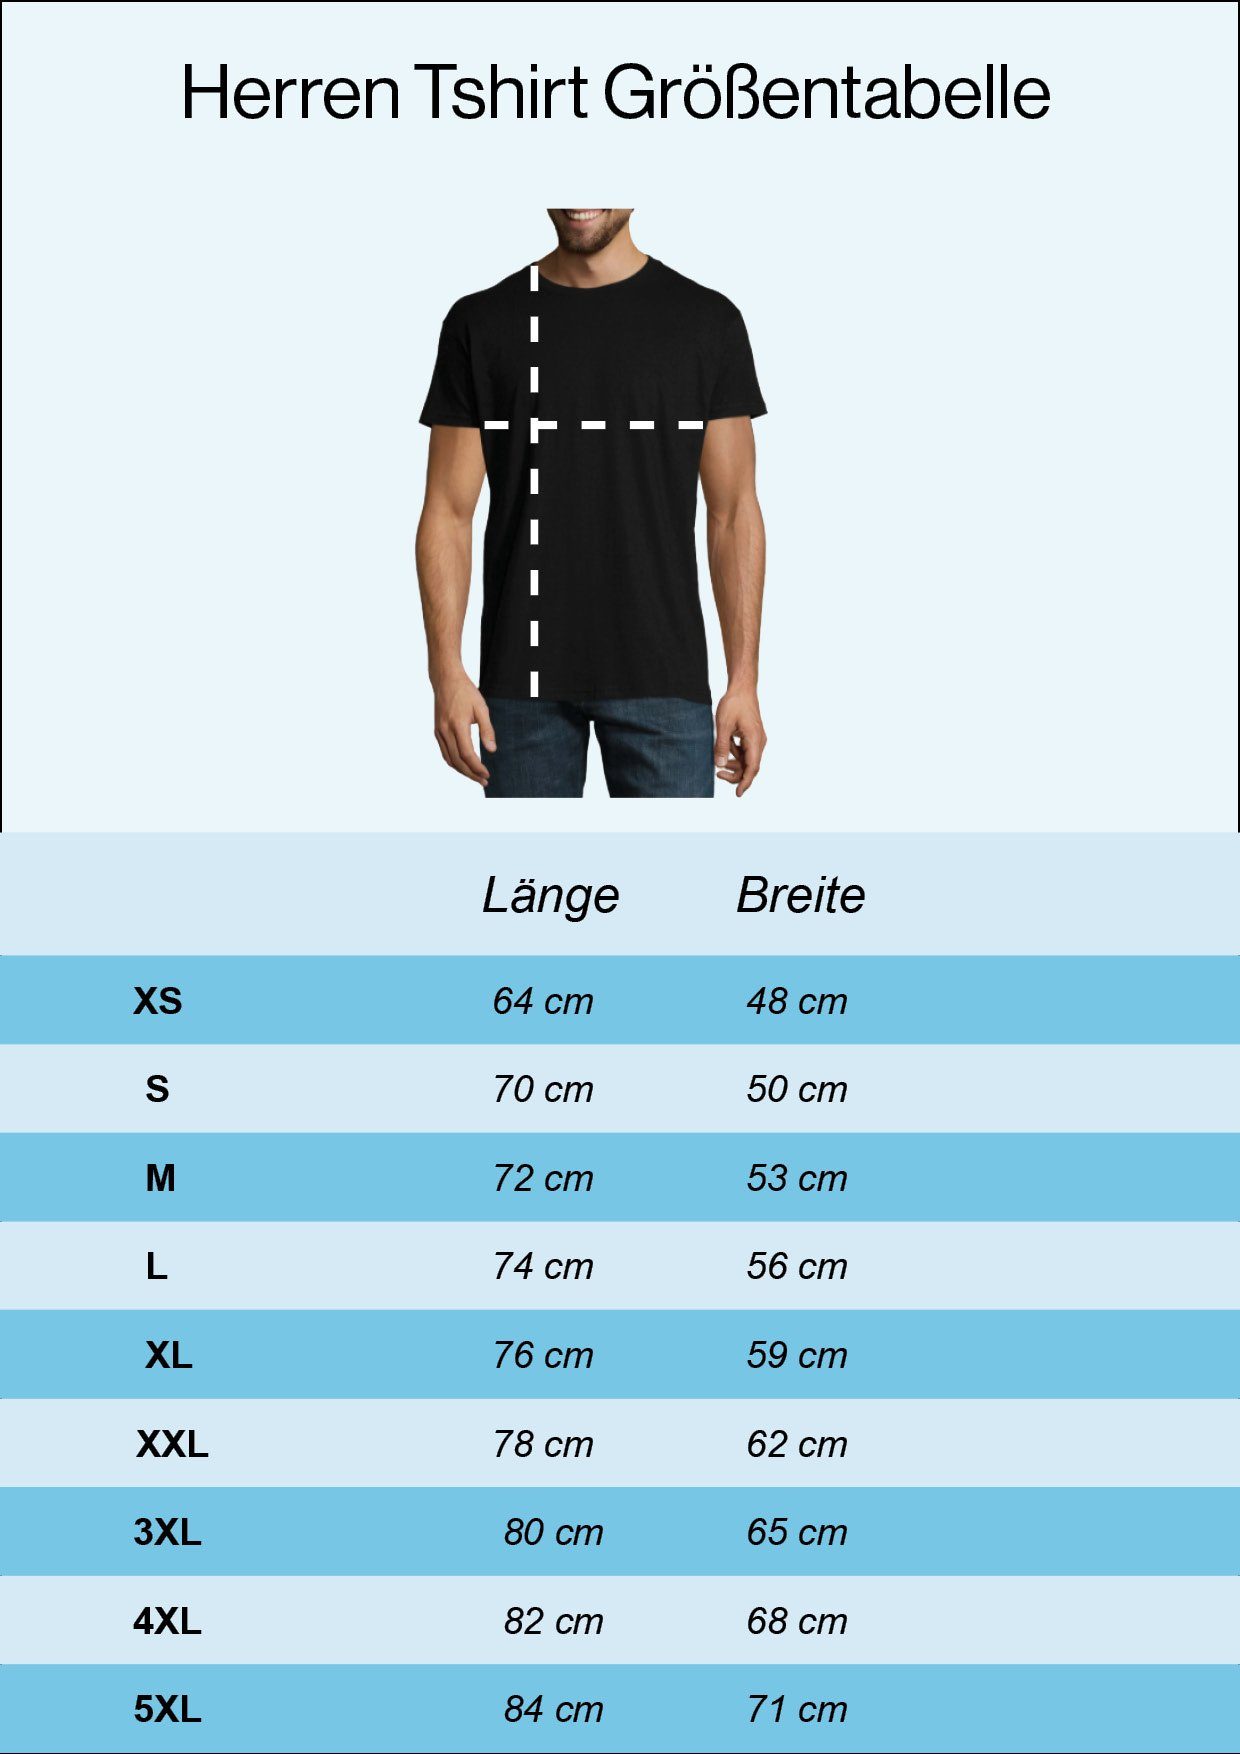 Jahren Trendigem Legendär Seit 40 Designz T-Shirt Herren Youth mit Schwarz Frontdruck Shirt